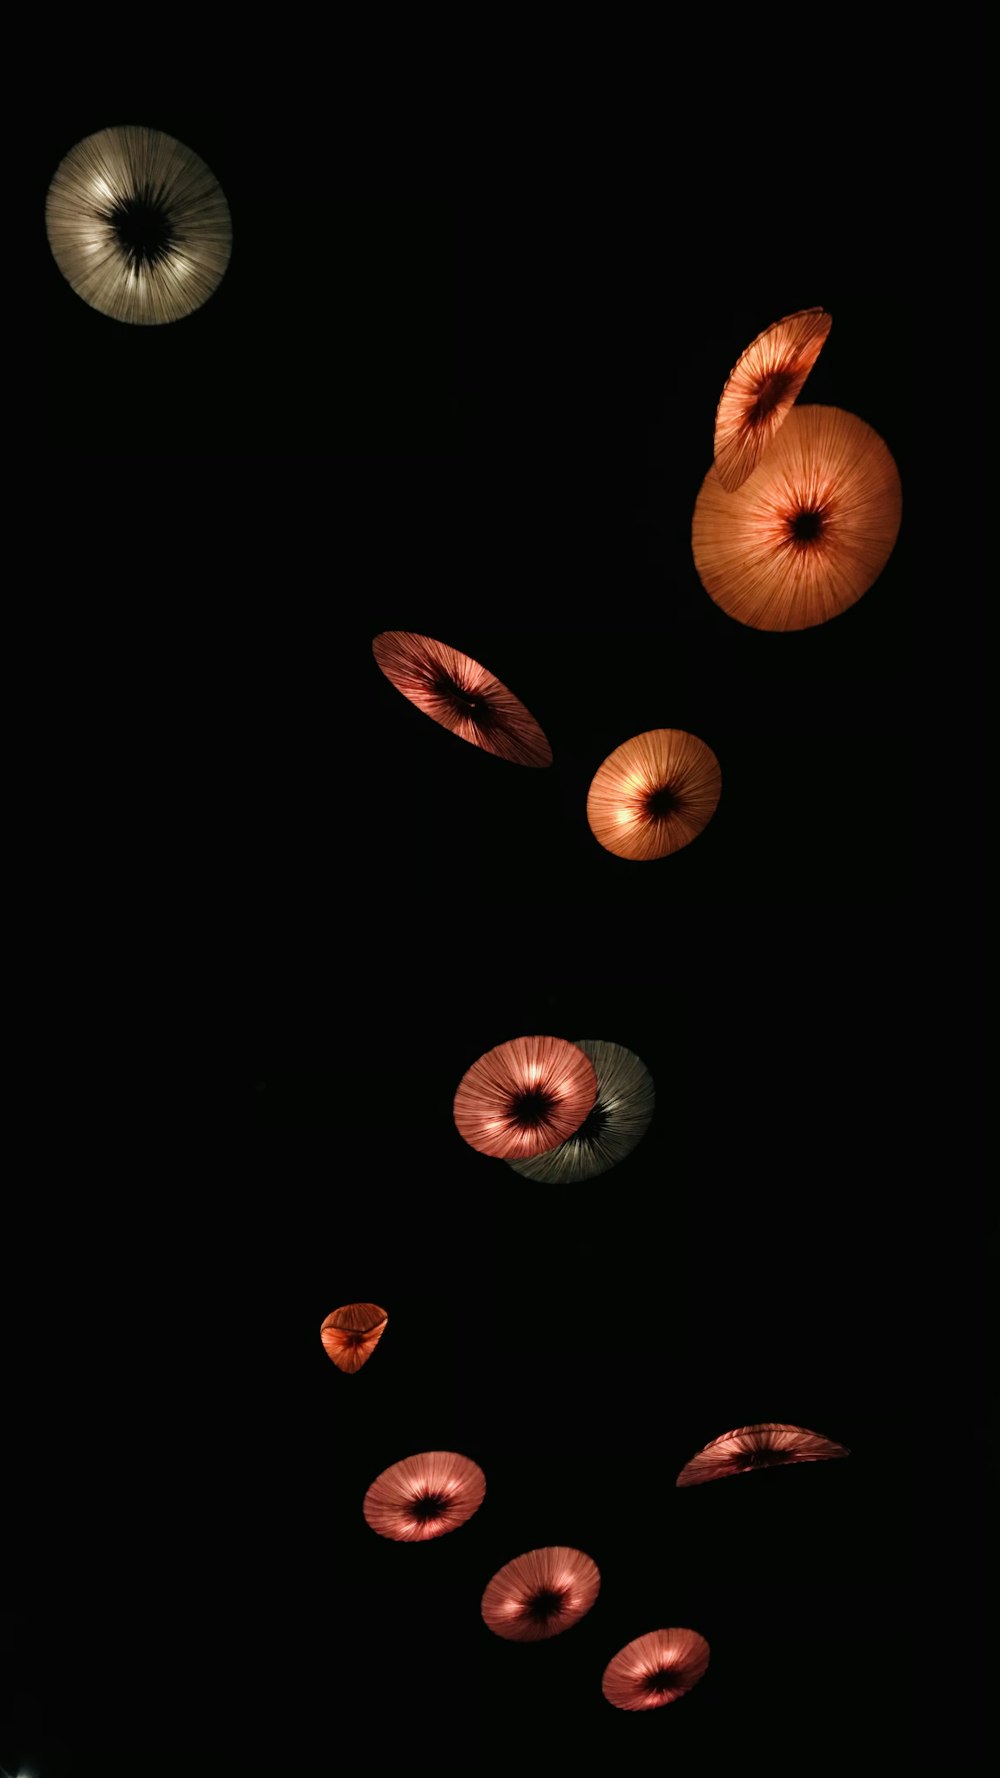 Un groupe d’oranges flottant dans l’air